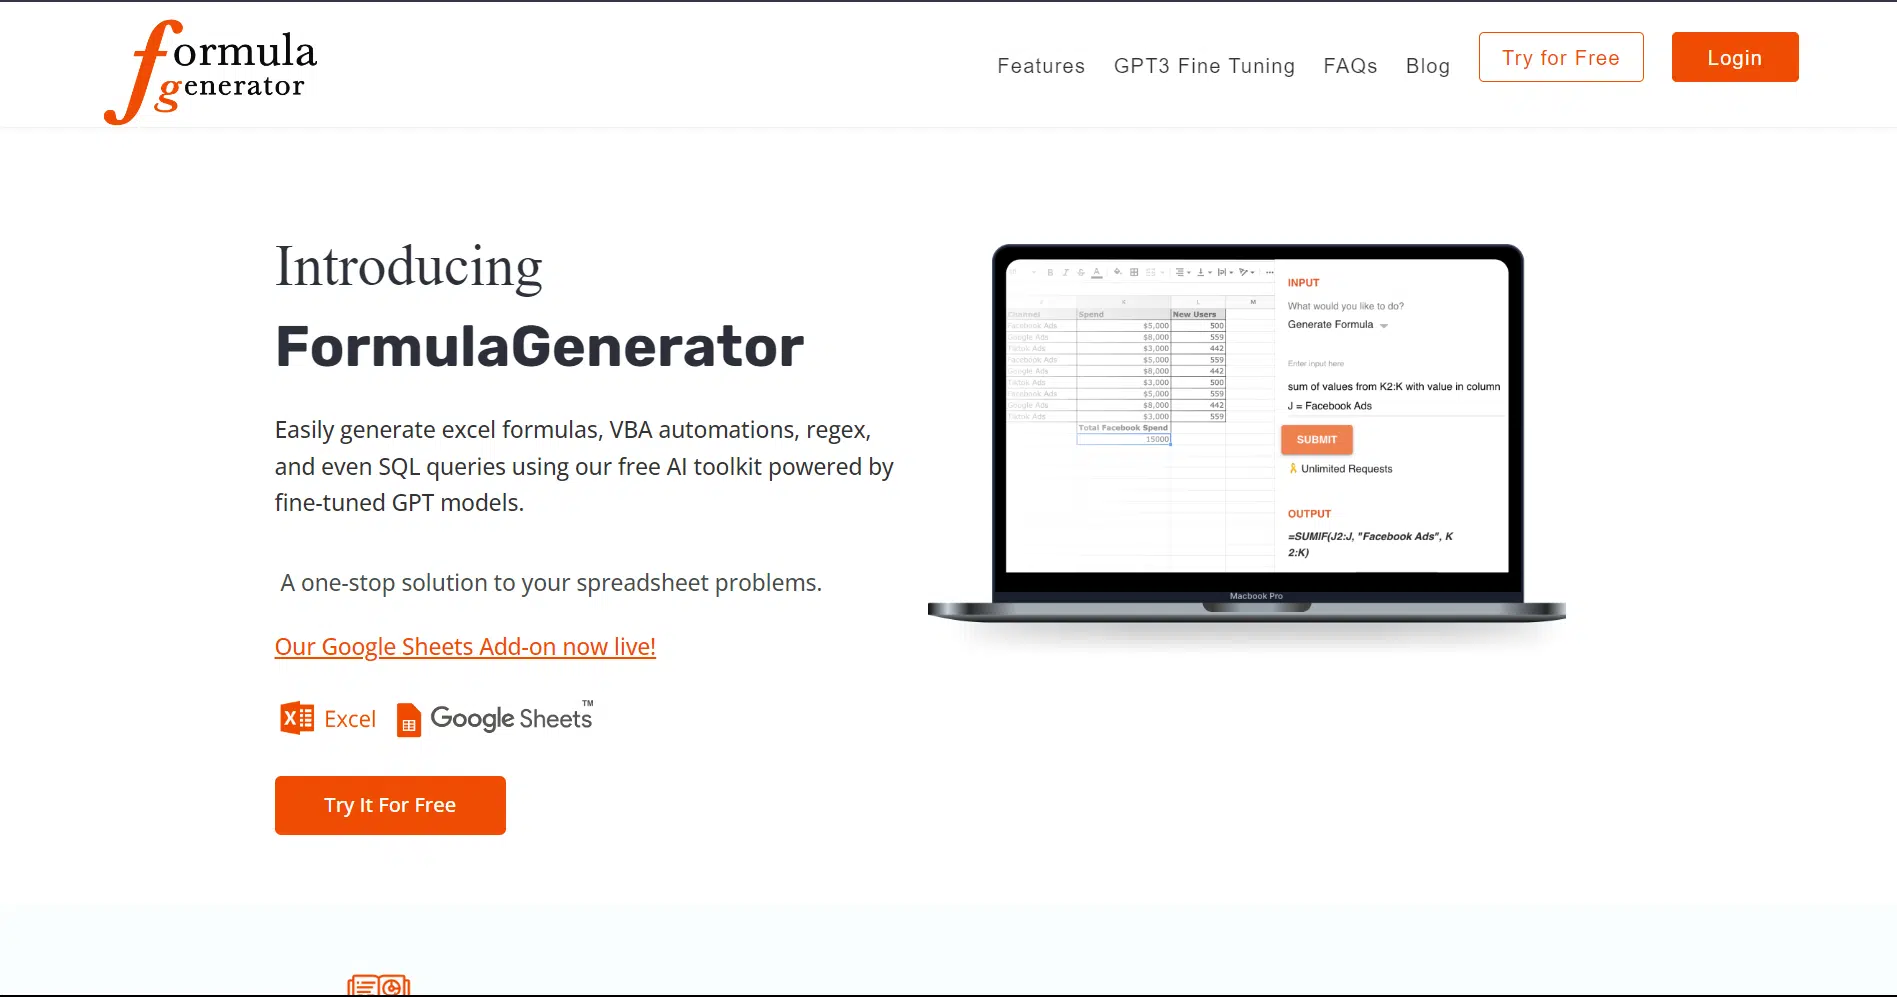 Formula Generatorwebsite picture